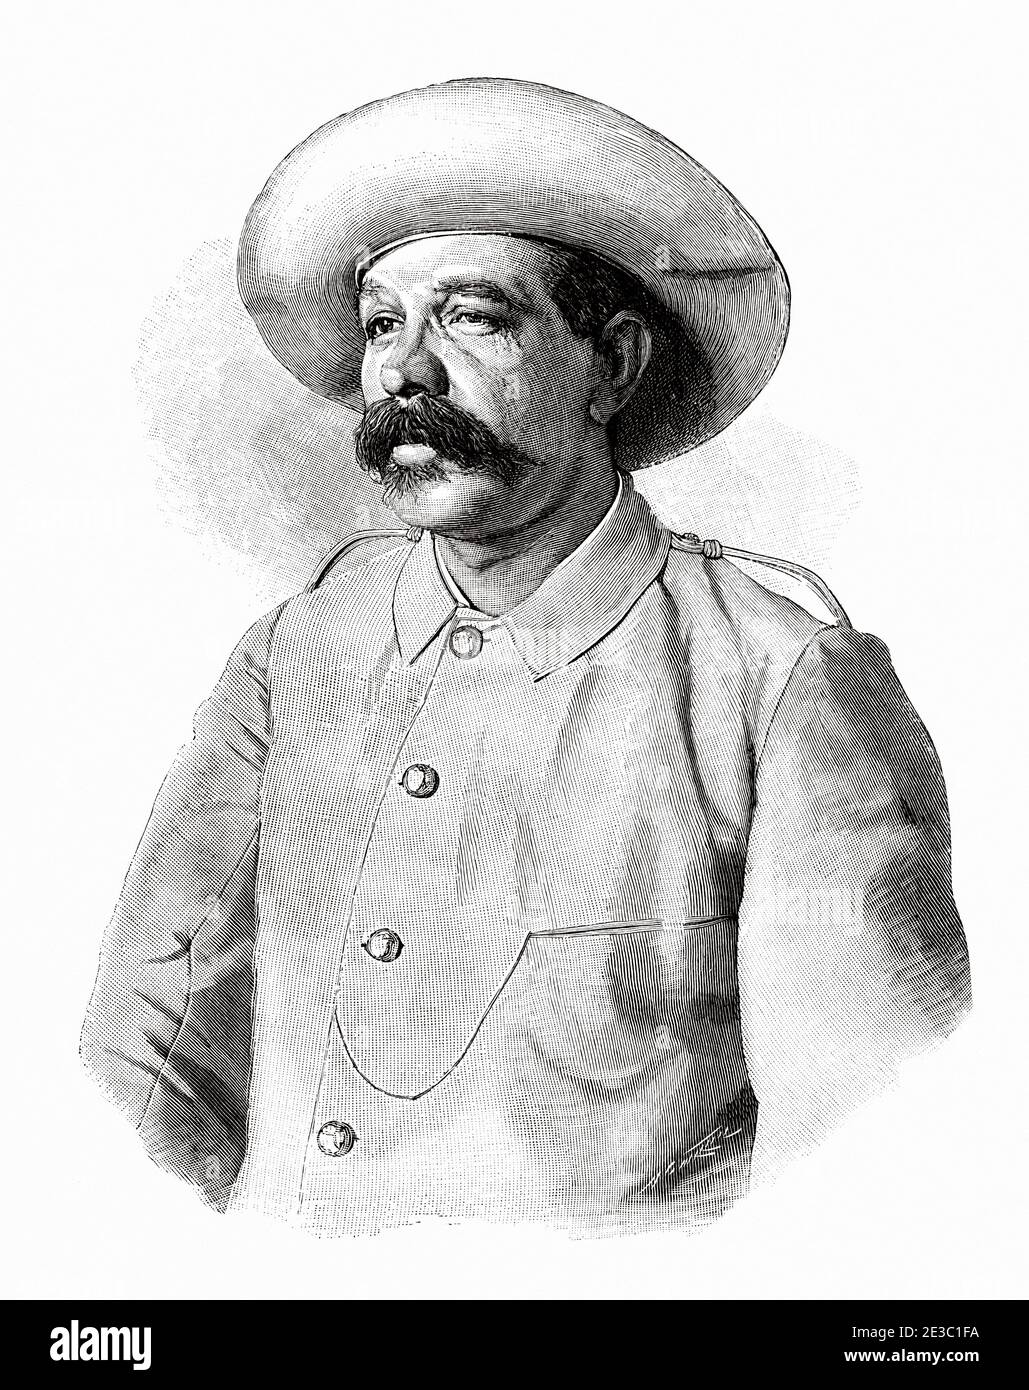 Federico Alonso Gasco y Lavedán, Brigadier General and Military Governor of the province of Pinar del Río, Cuba island. From La Ilustracion Española y Americana 1895 Stock Photo